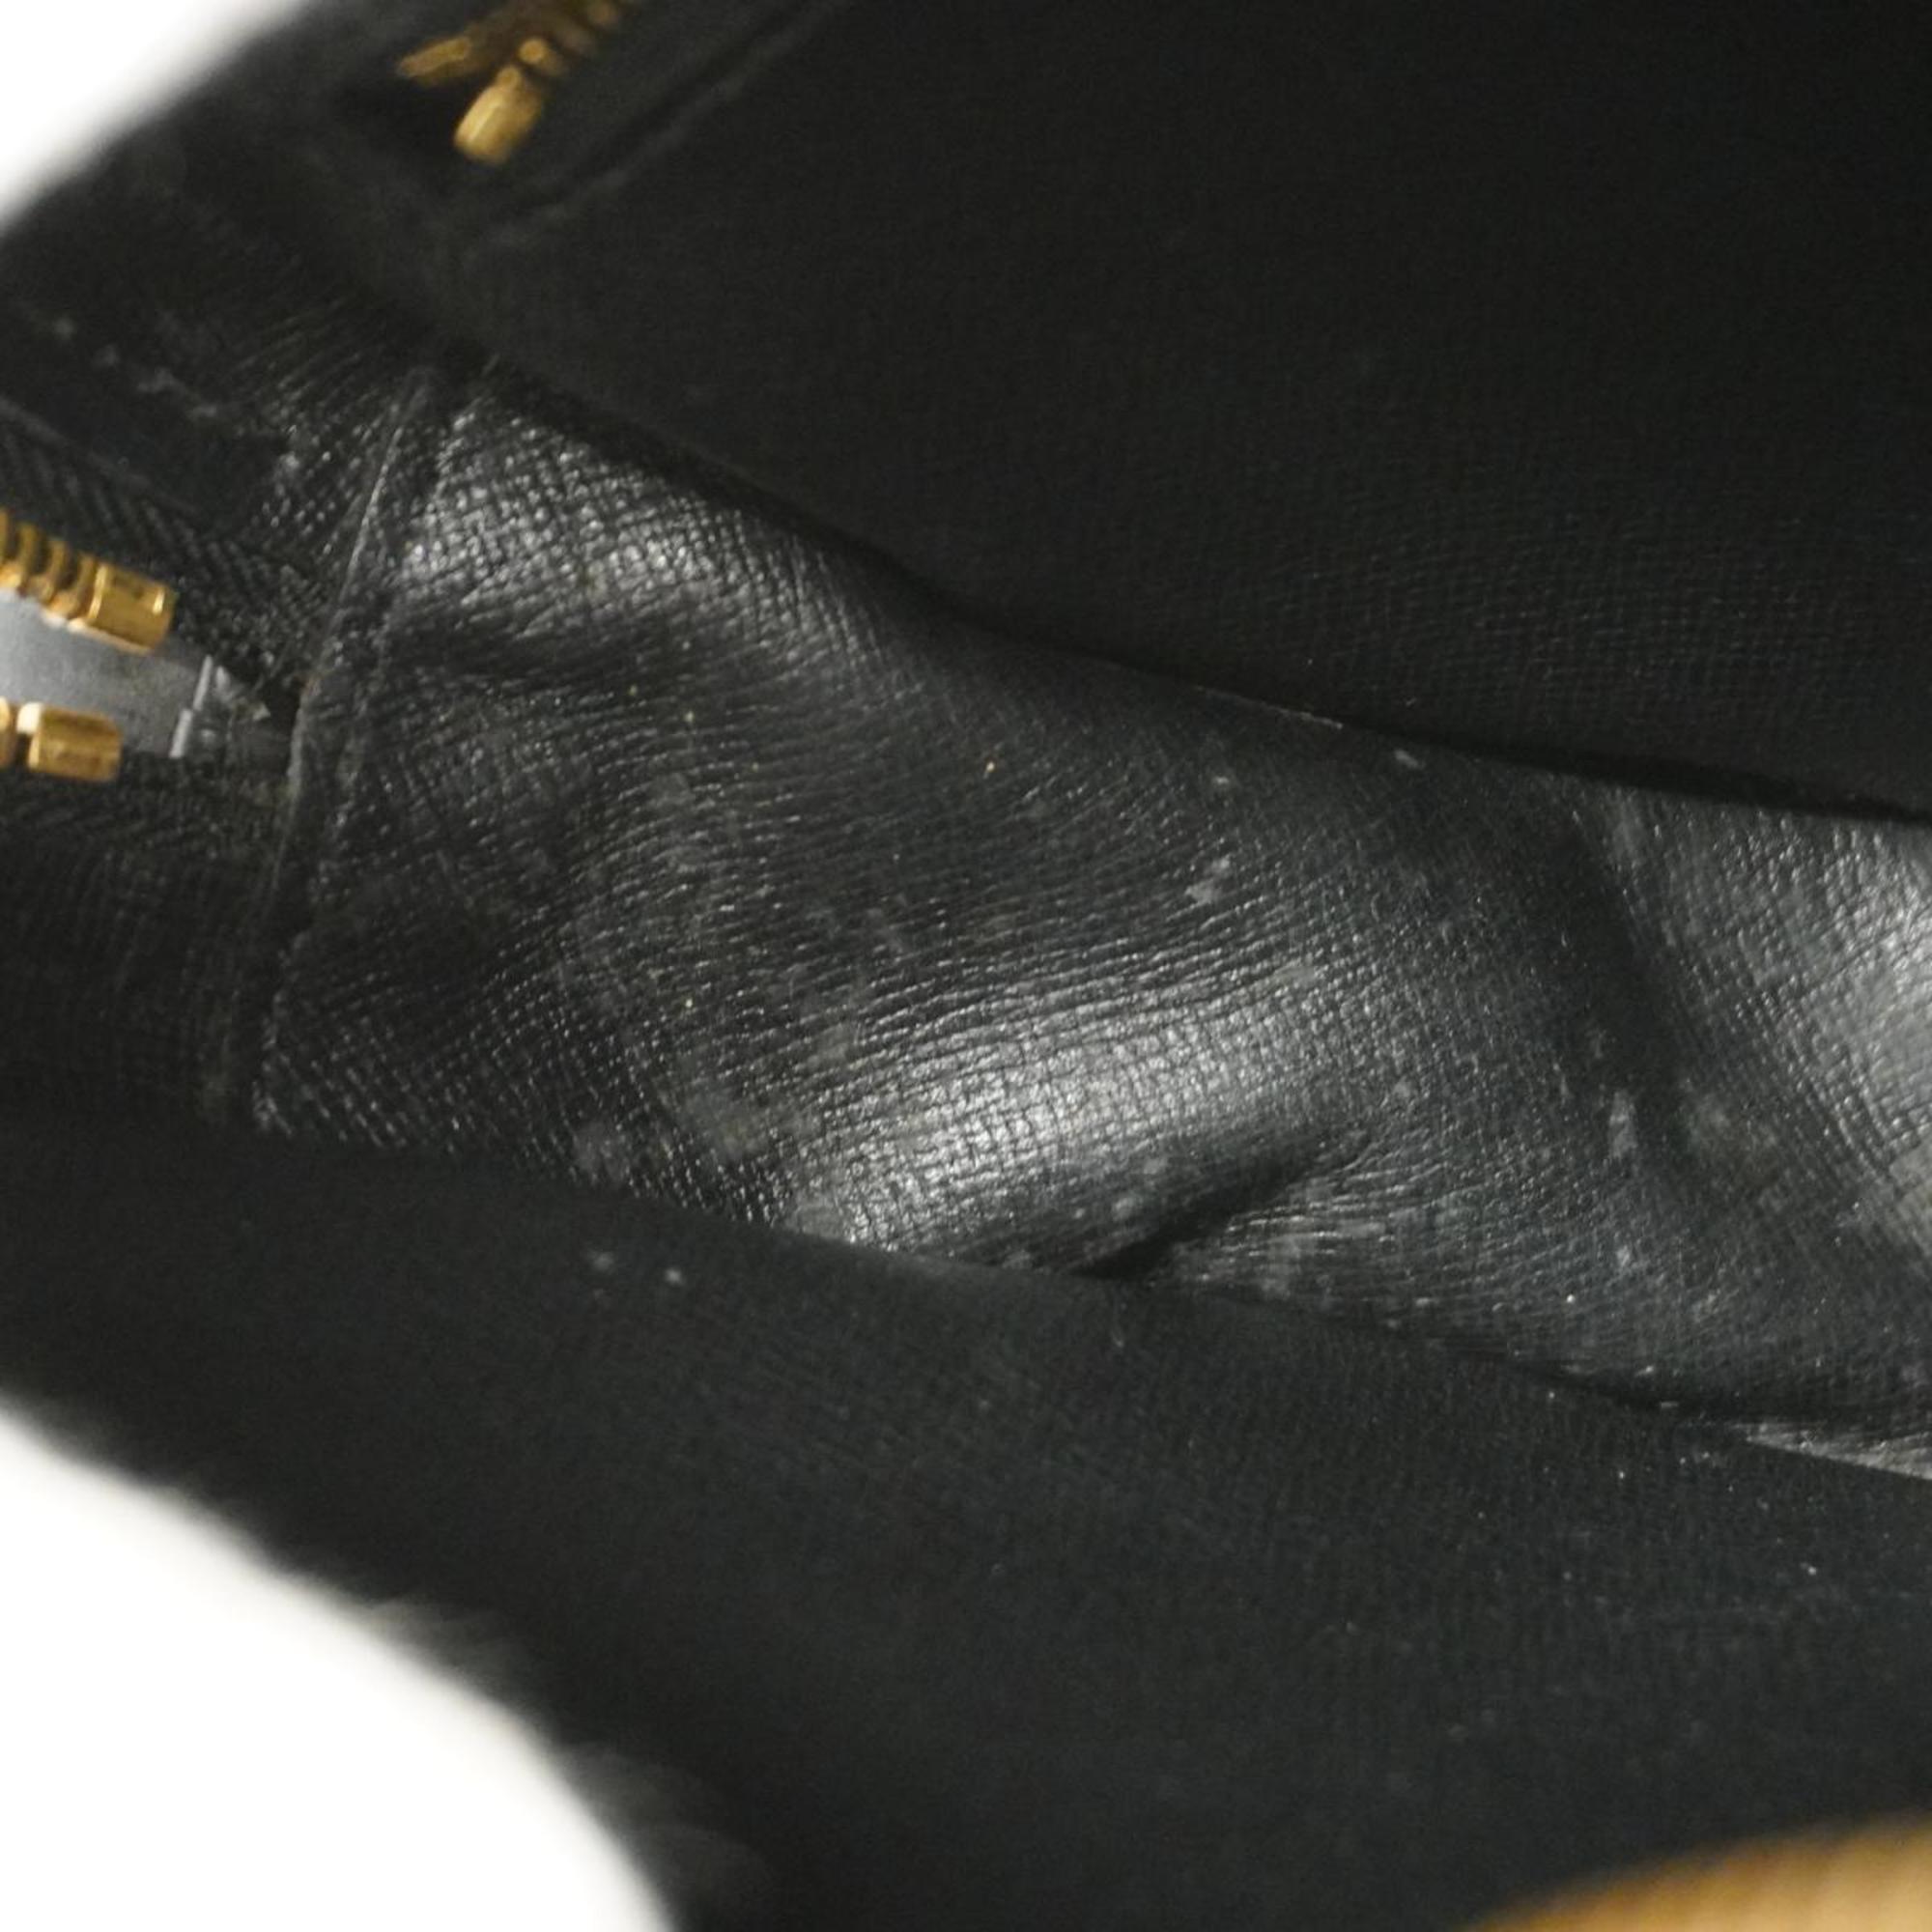 Louis Vuitton Shoulder Bag Epi Jone Fille M52152 Noir Ladies